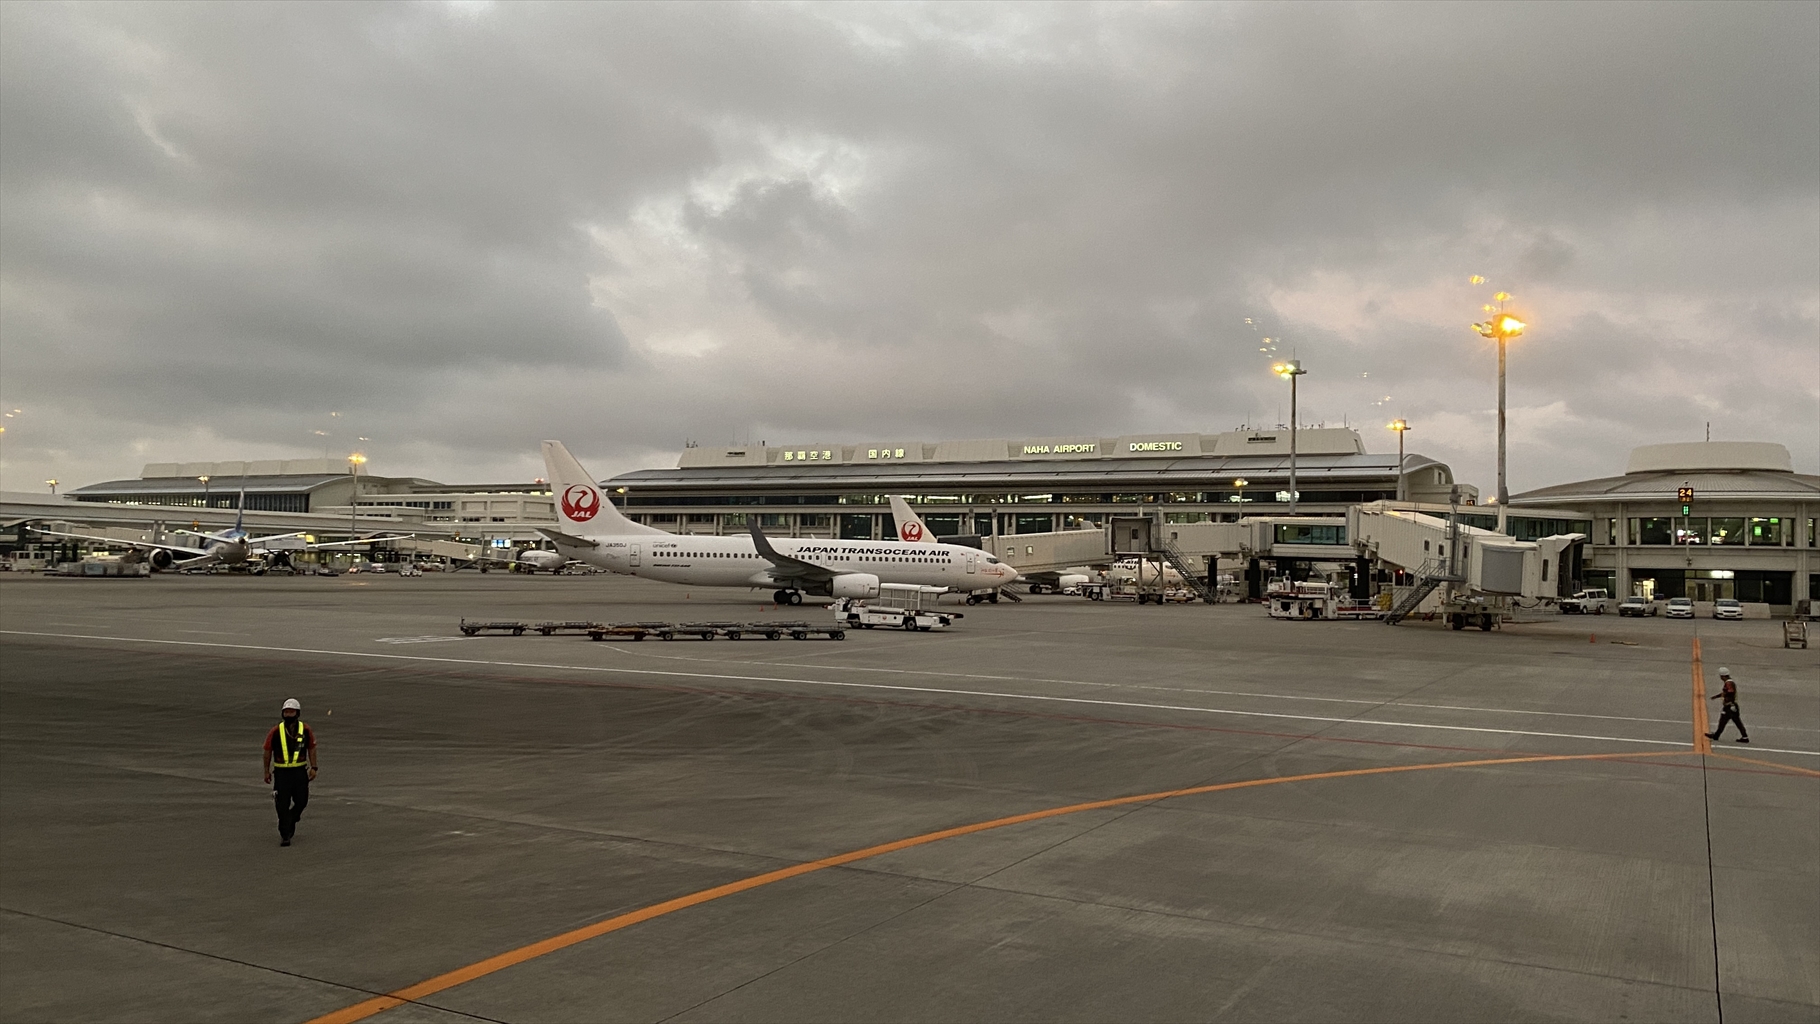 ボーイングB737-800型機 NU046 沖縄(那覇)～中部(名古屋) クラスJ搭乗記 01JUN21